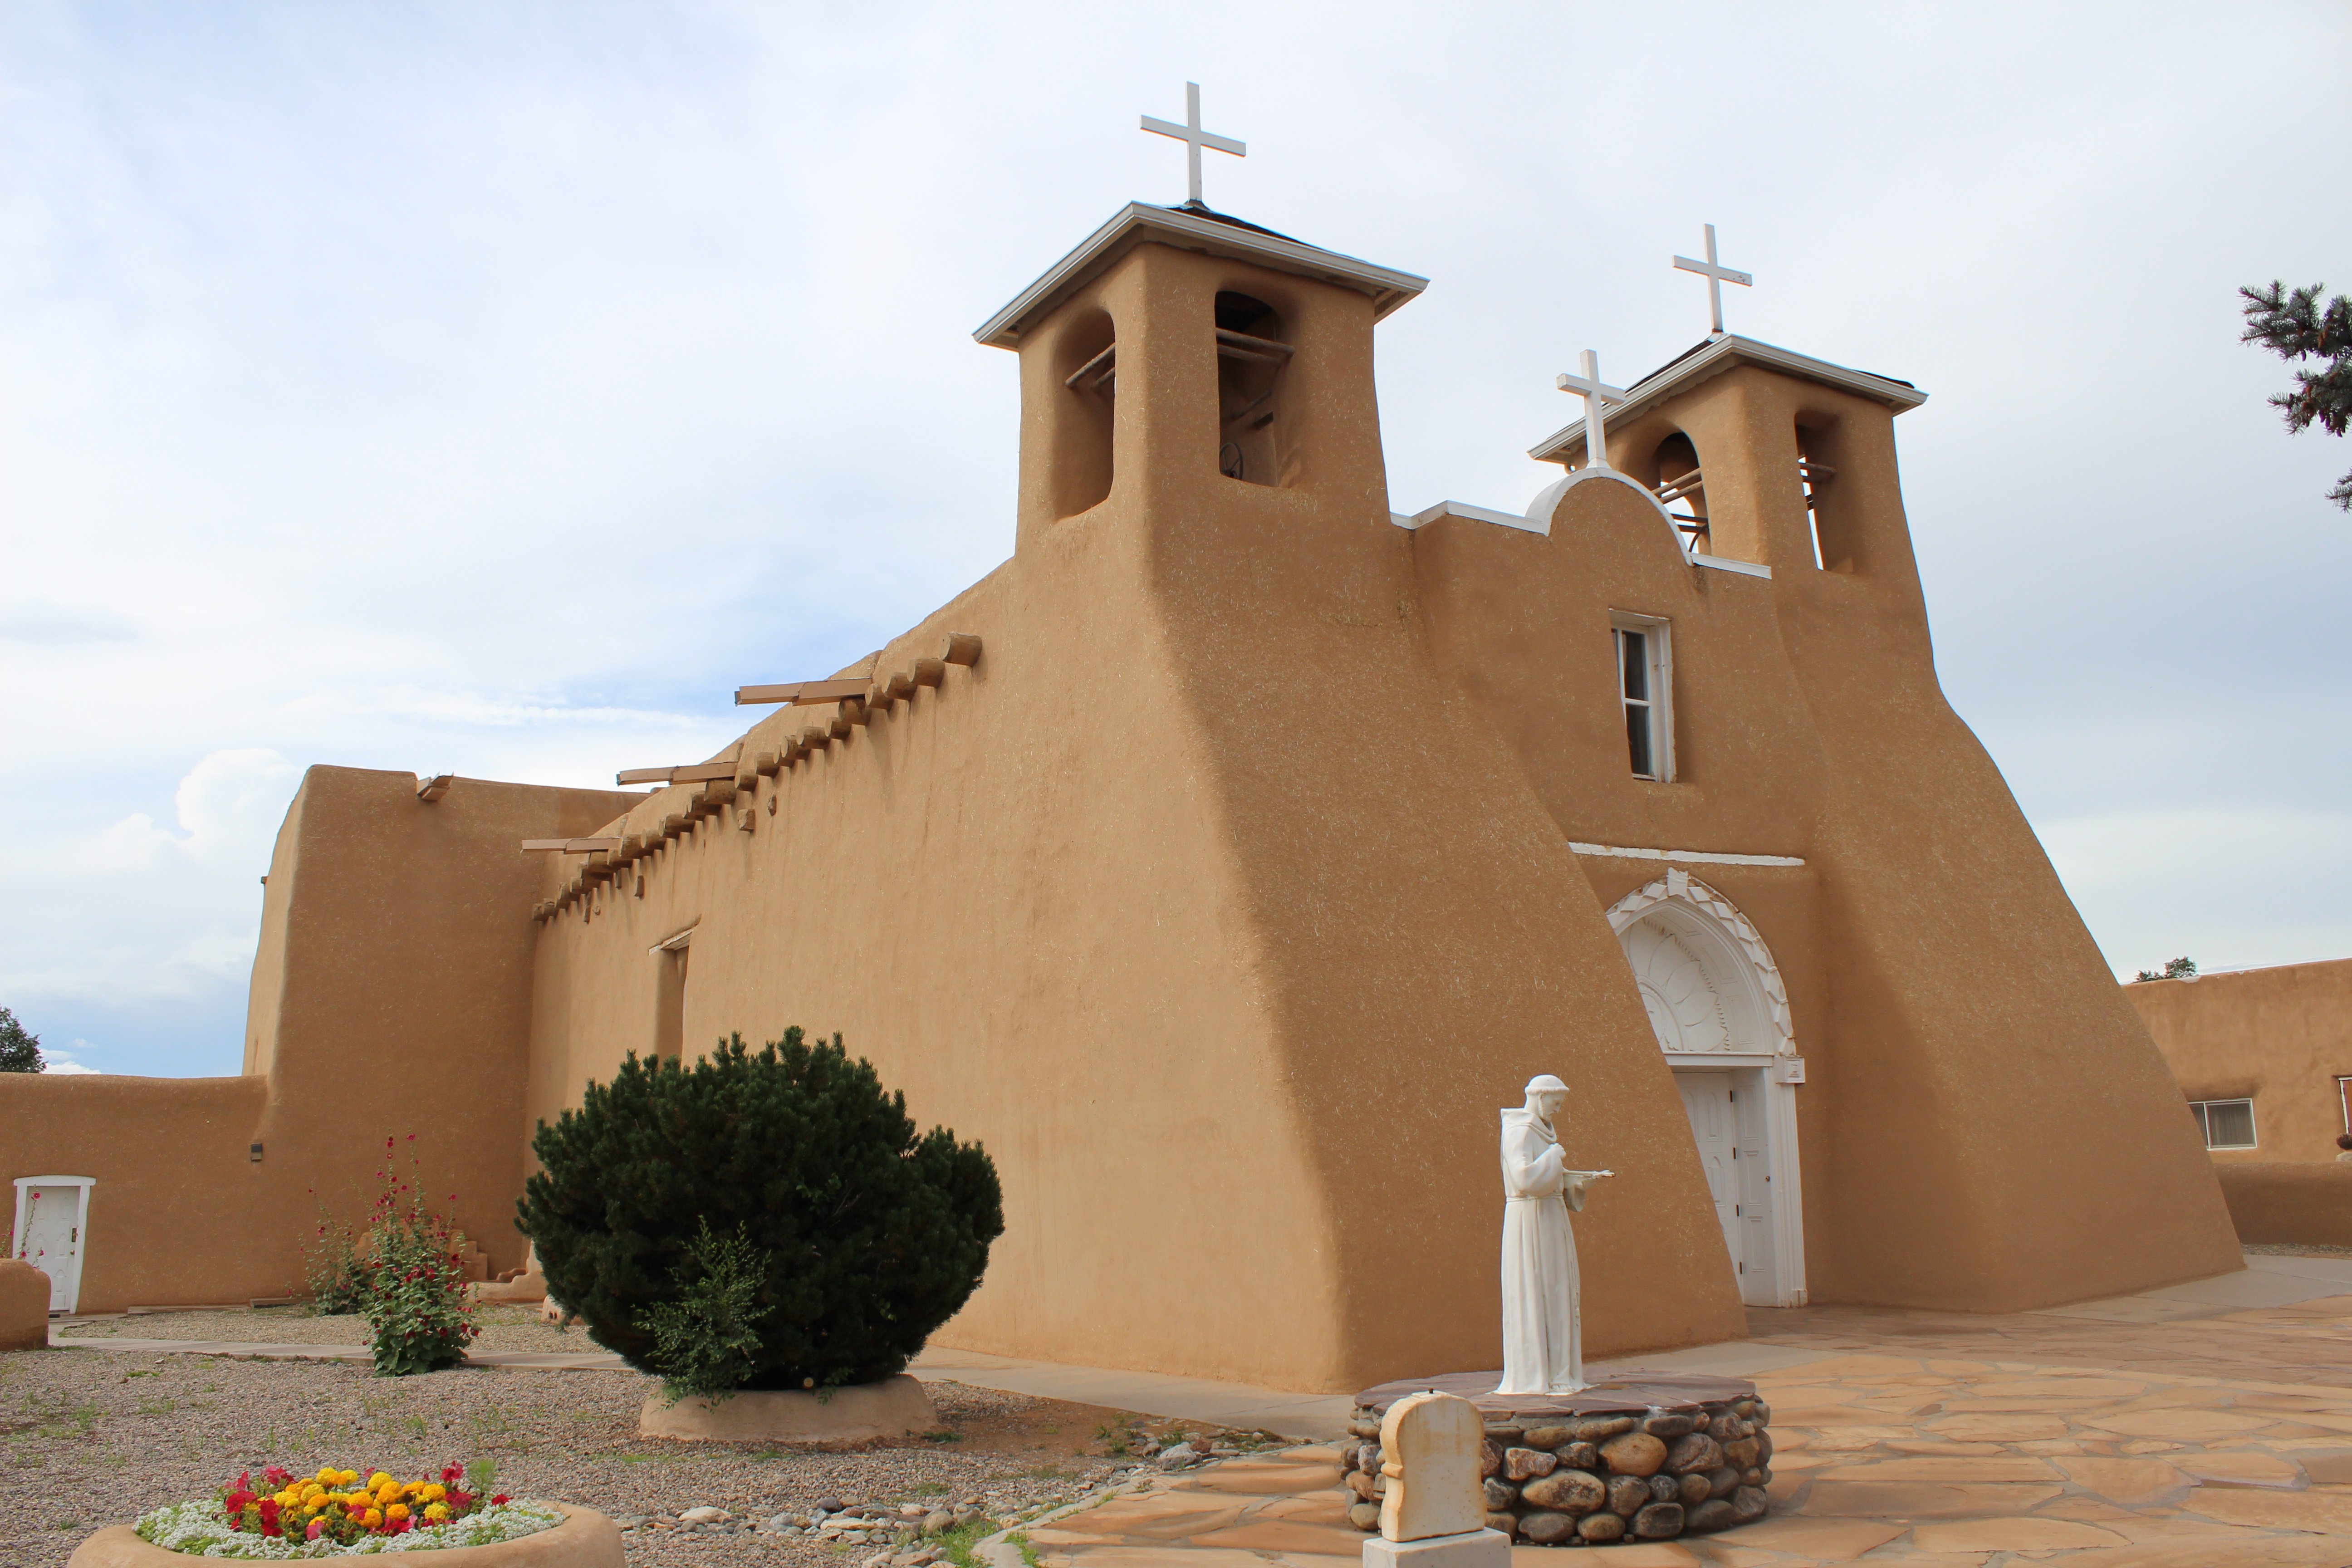 San Francisco de Asis Church in Ranchos de Taos, New Mexico, USA